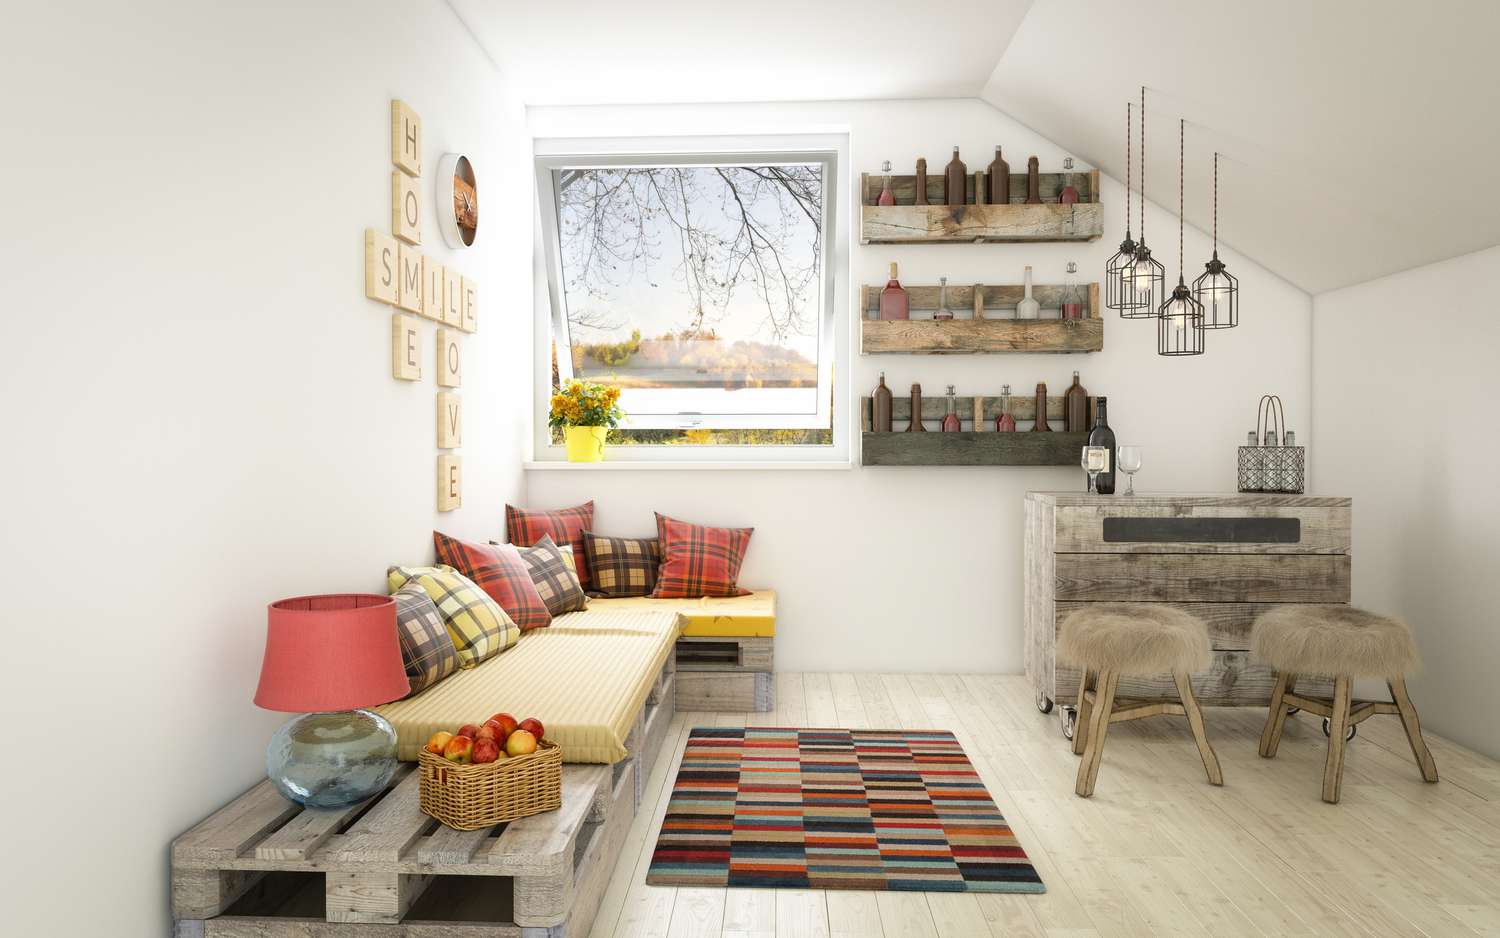 Espace de vie avec tapis, canapés, fauteuils, lampes suspendues et fenêtre.